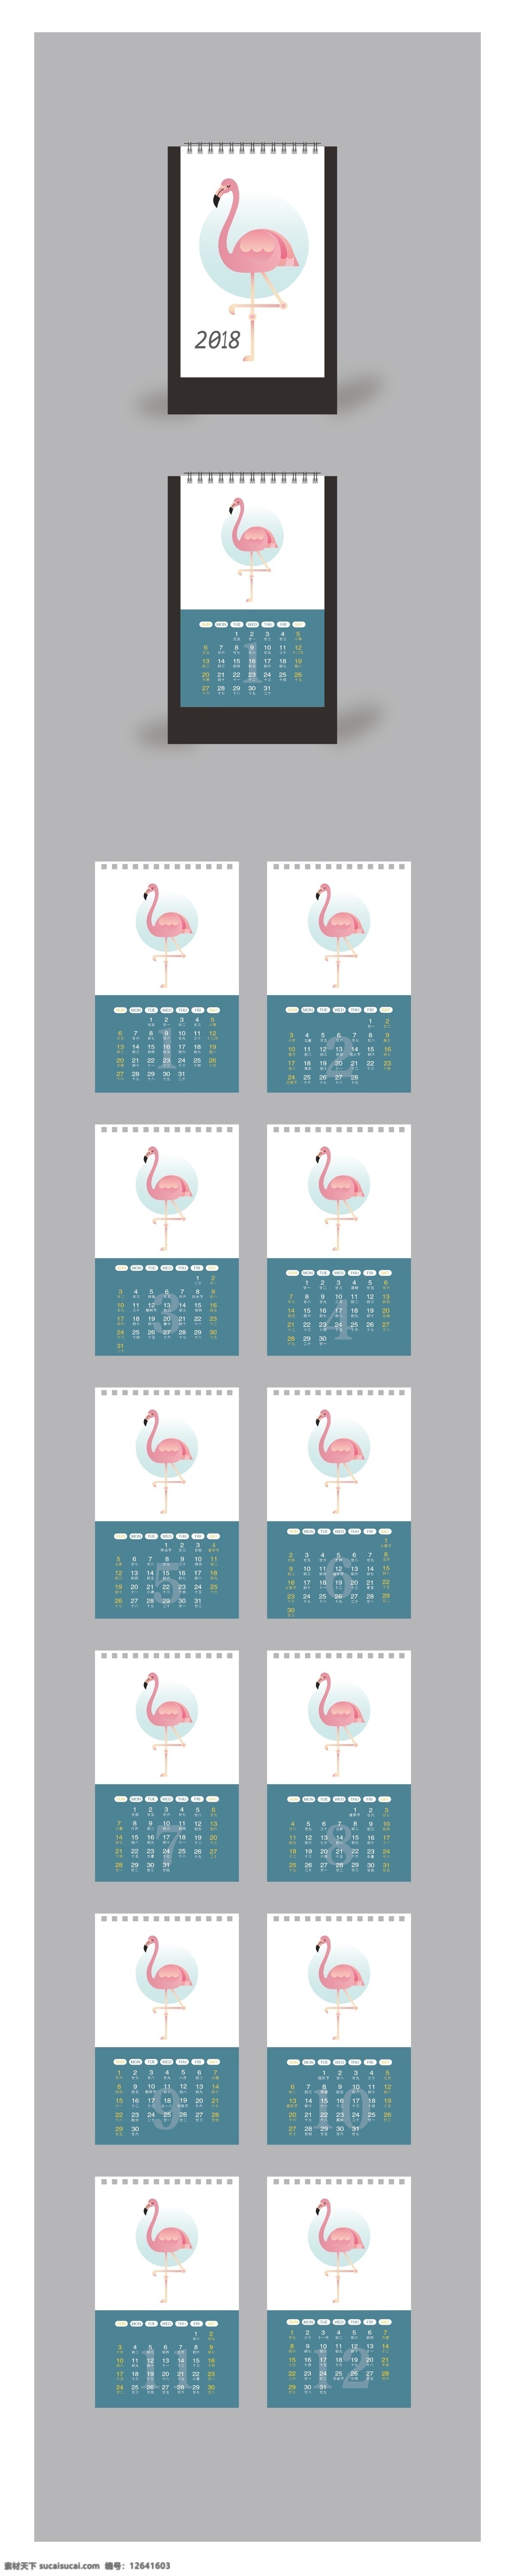 2018 年 简约 小 清新 日历 火烈鸟 卡通日历 可爱日历 年历 平面设计 设计模板 纸卡设计